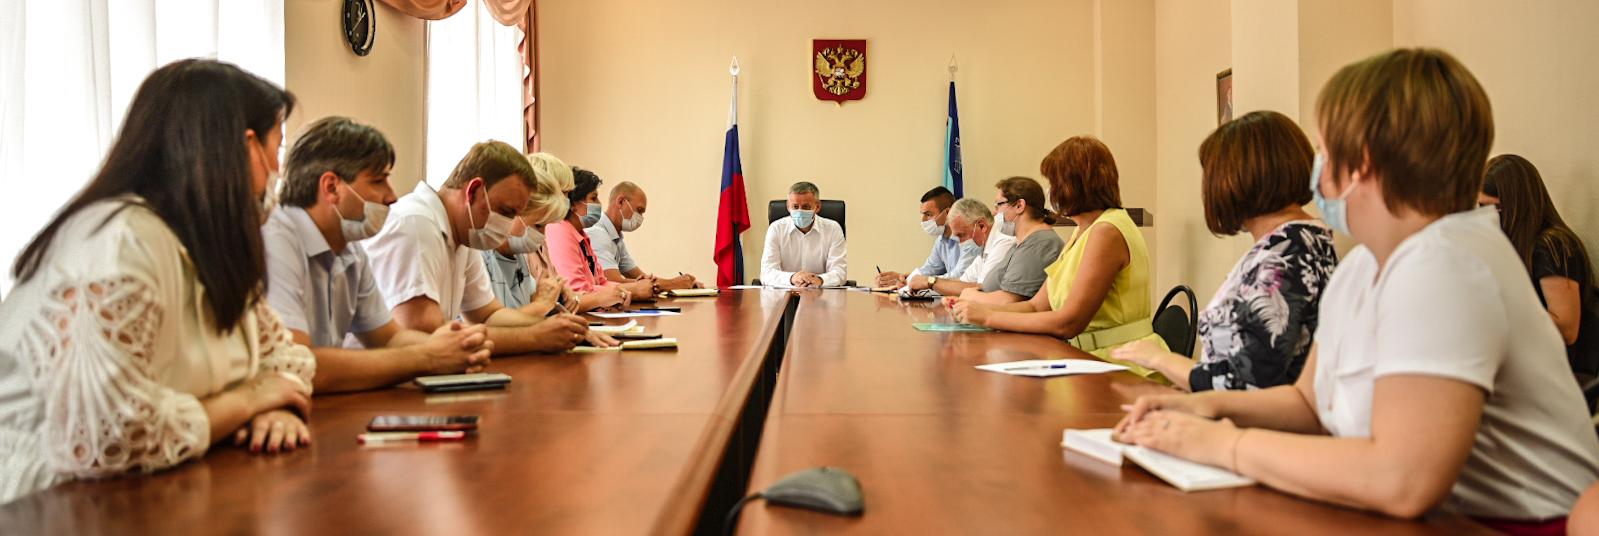 Глава Курска встретился с руководителями детских садов и школ города